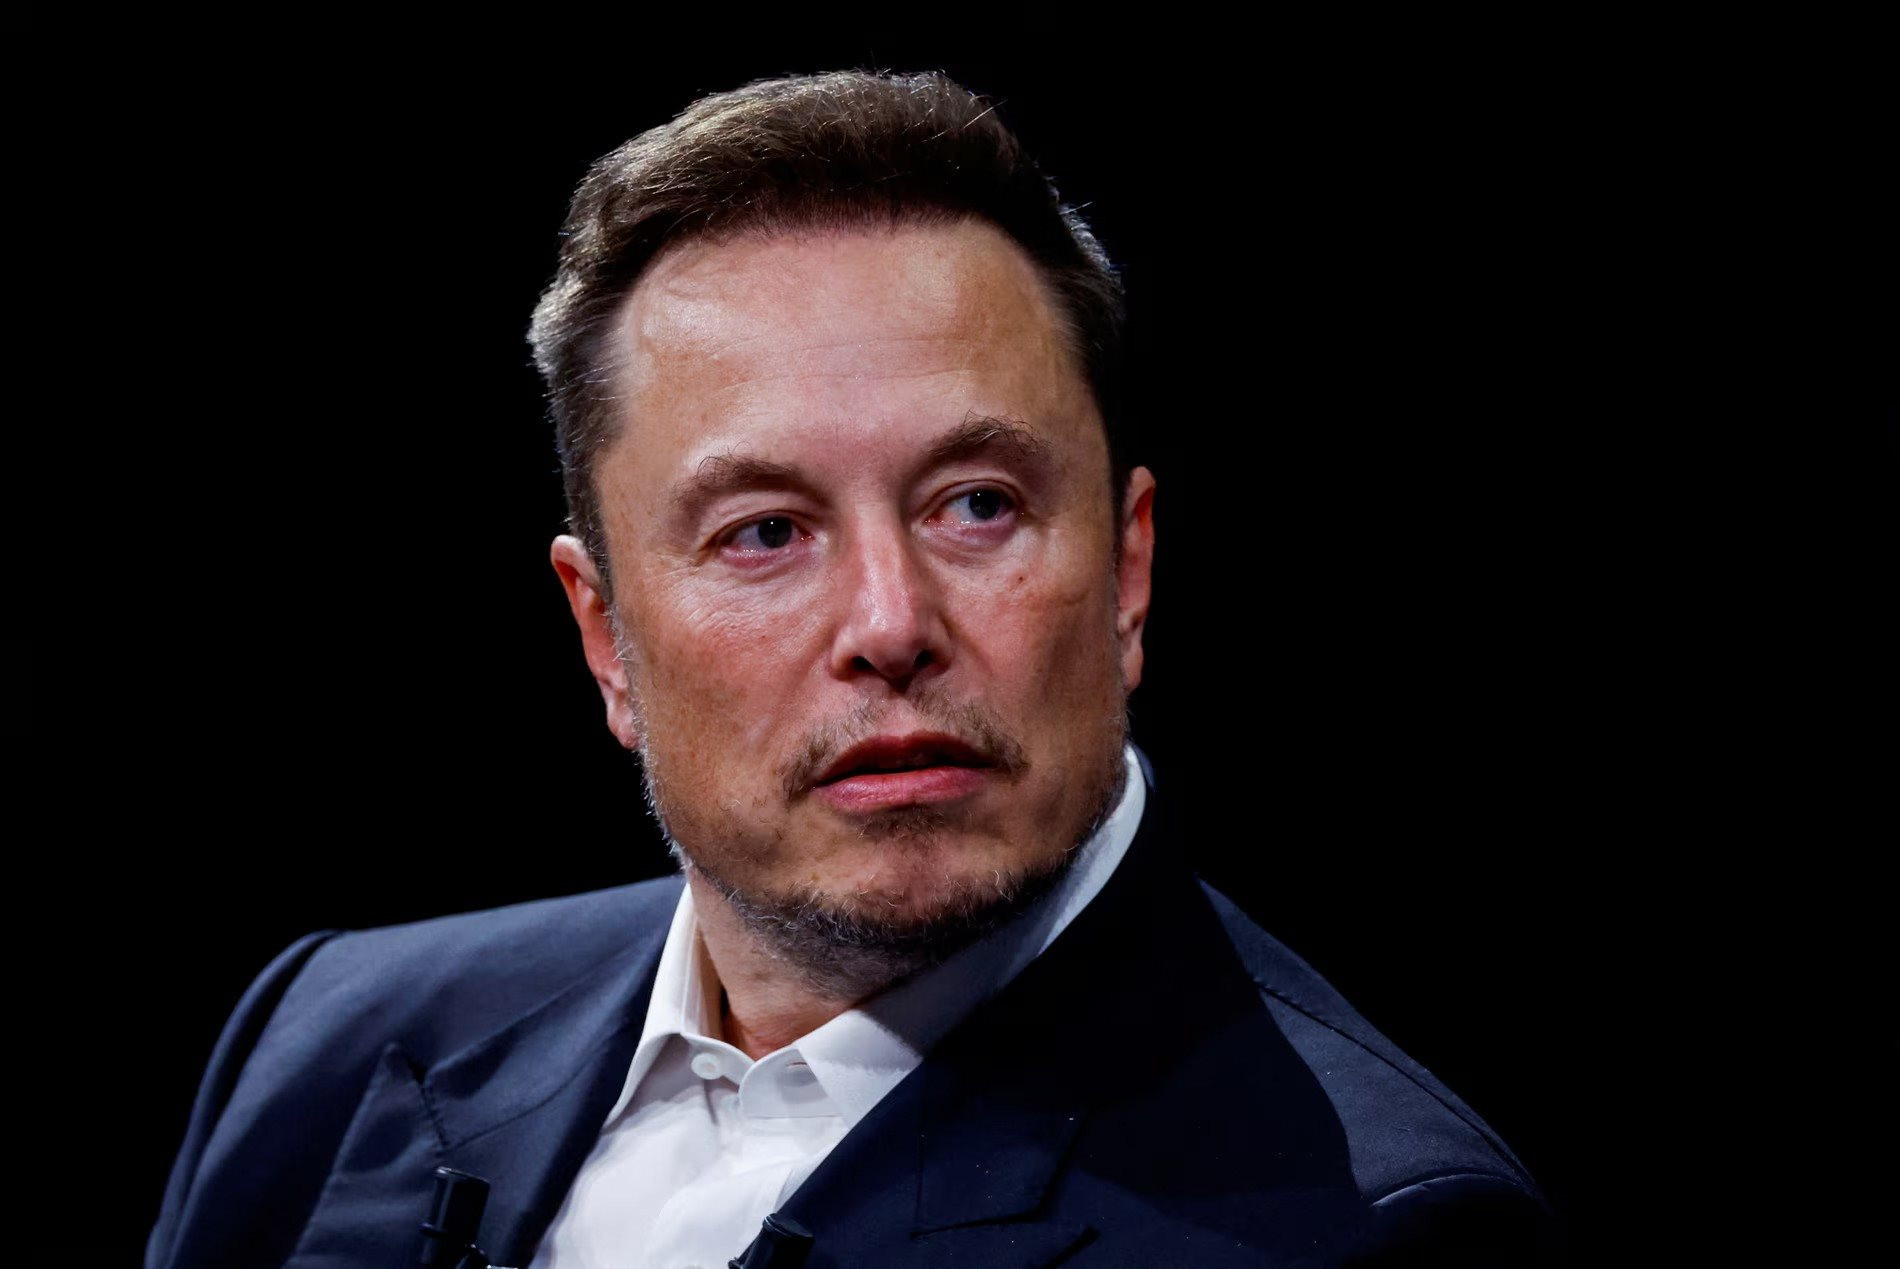 Elon Musk đón tin vui: Gói thù lao kỷ lục 56 tỷ USD được thông qua, Tesla sẽ có trụ sở mới- Ảnh 1.